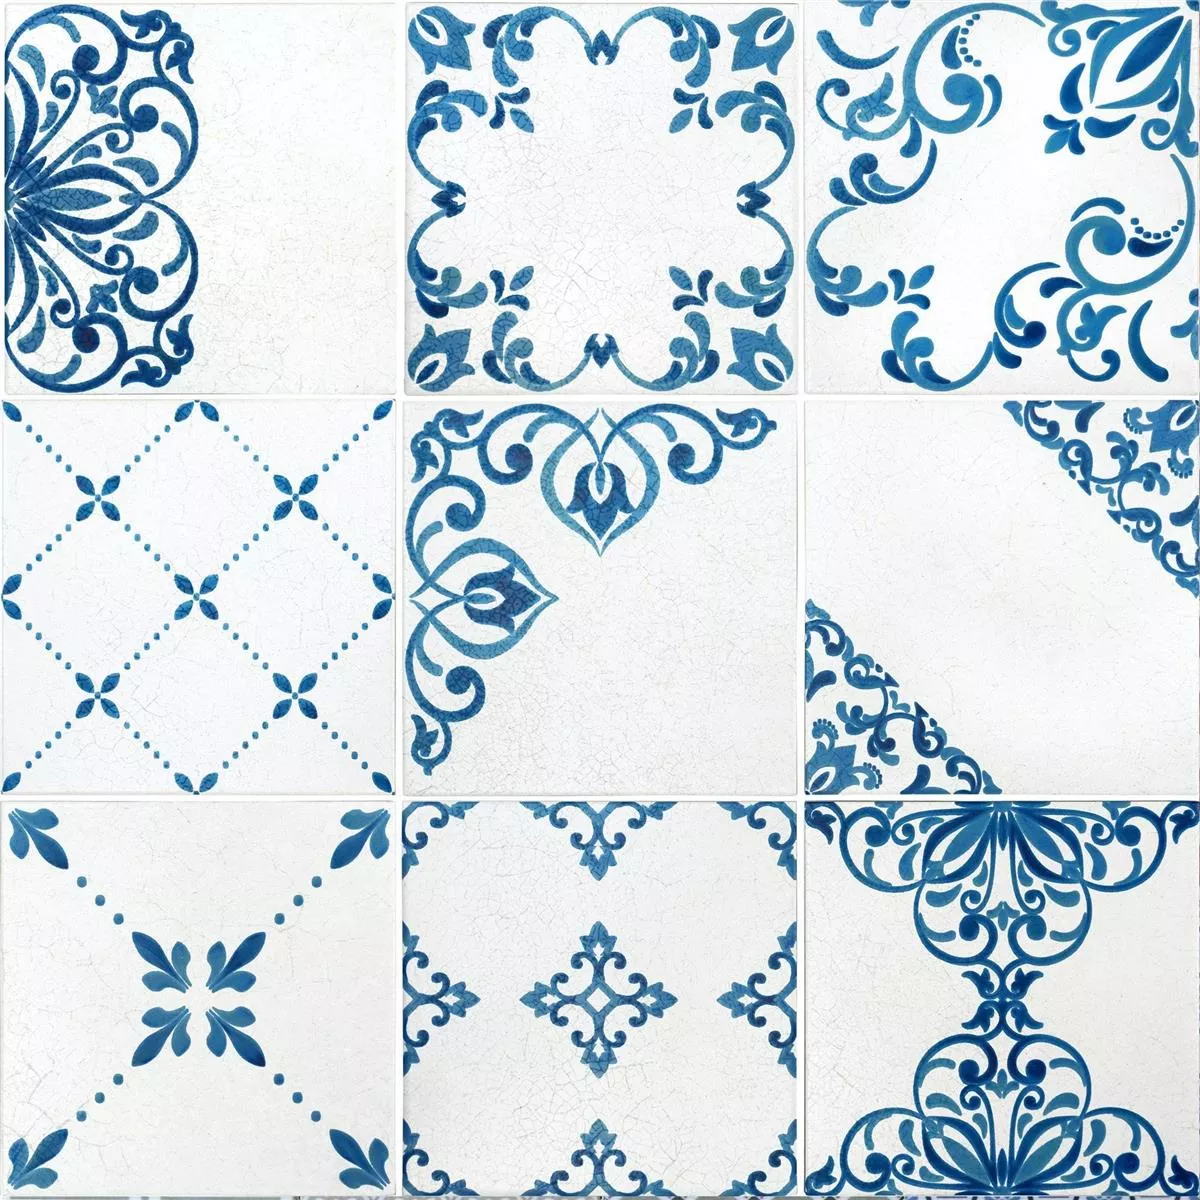 Vzorek Podlahové Dlaždice Talia Retro Vzhled Modrá 18,5x18,5cm